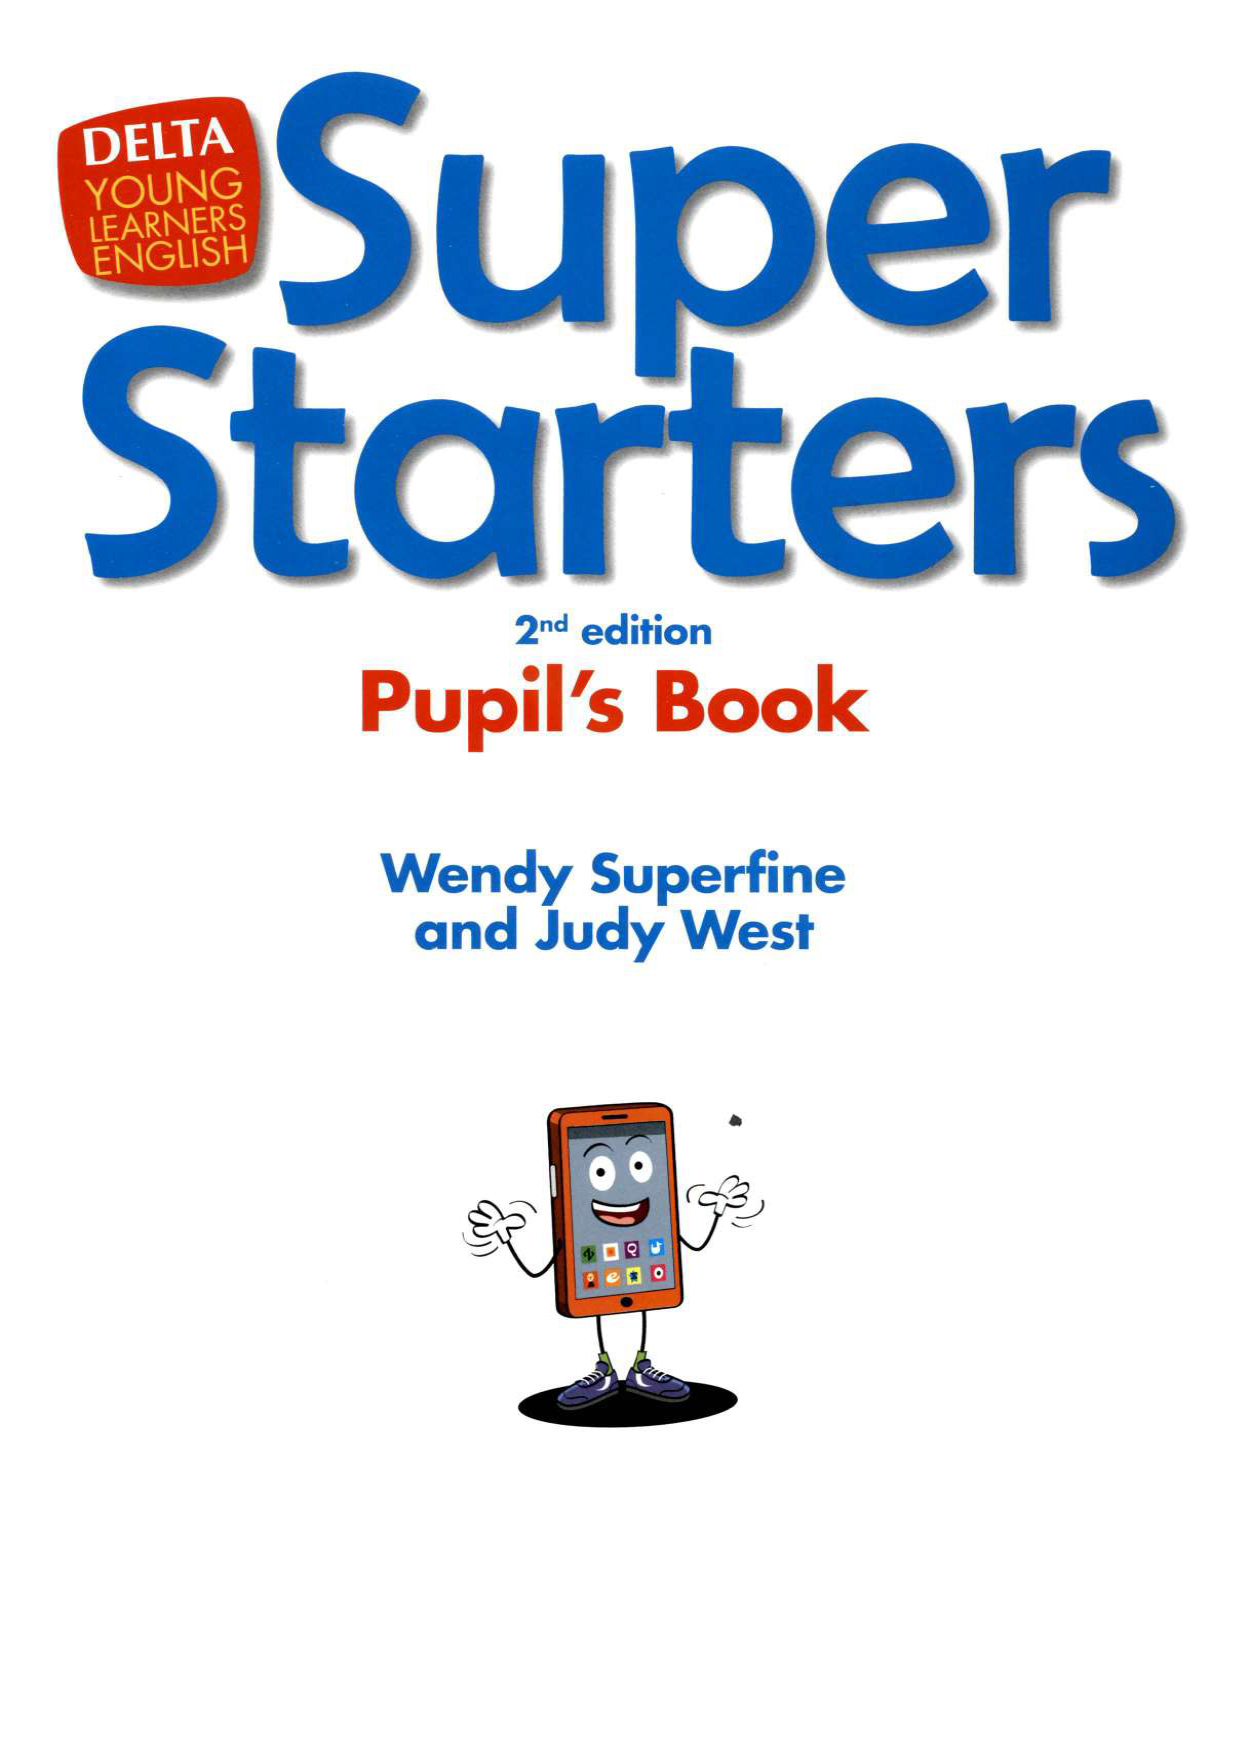 Super Starters Pupils Book 2nd ( sách màu)